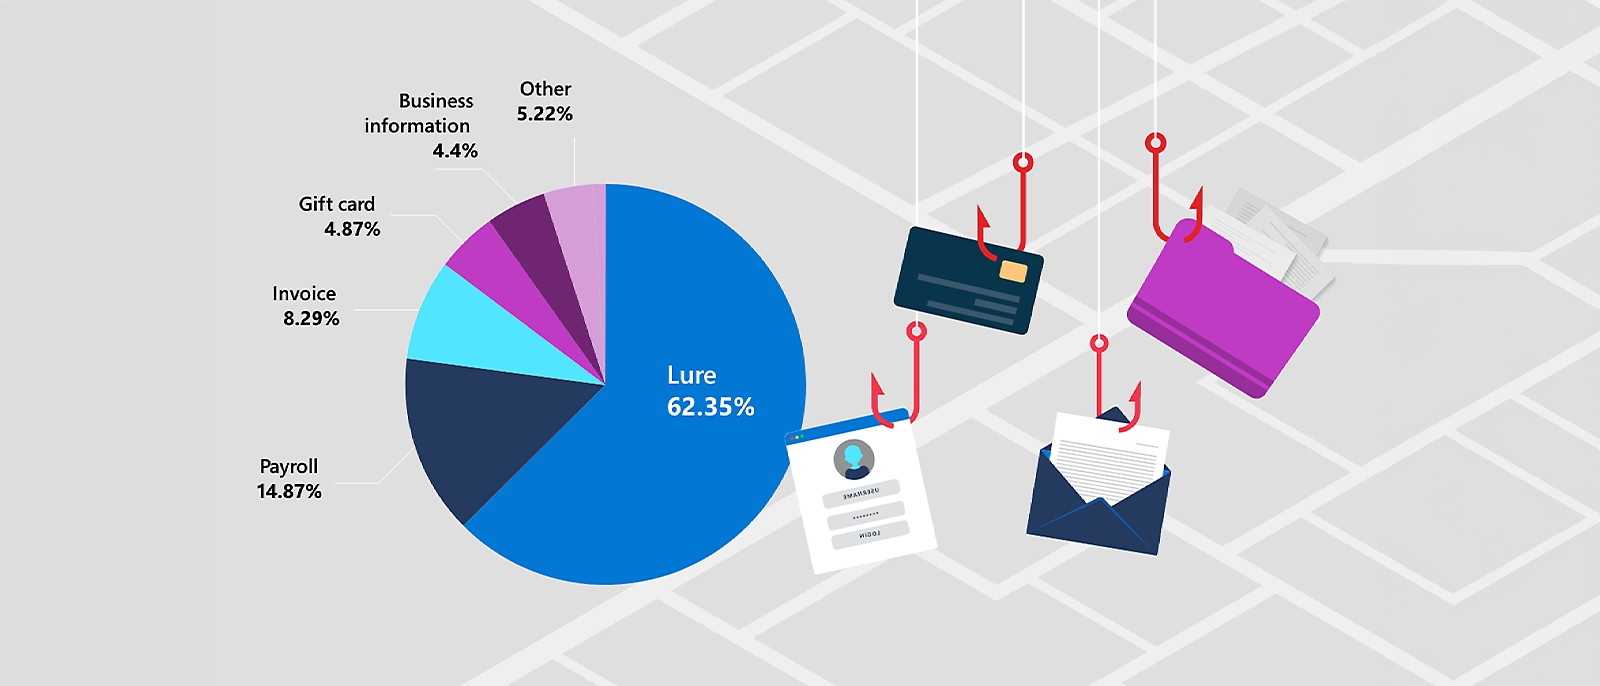 Gráfico circular a mostrar a discriminação de percentagem de diferentes tipos de e-mails de phishing utilizados em ataques de Comprometimento de E-mail Empresarial. Engodo é o tipo mais comum a 62,35%, seguido de Folha de Pagamentos (14.87%), Fatura (8.29%), Cartão de oferta (4.87%), Informações Empresariais (4.4%) e Outros (5.22%).